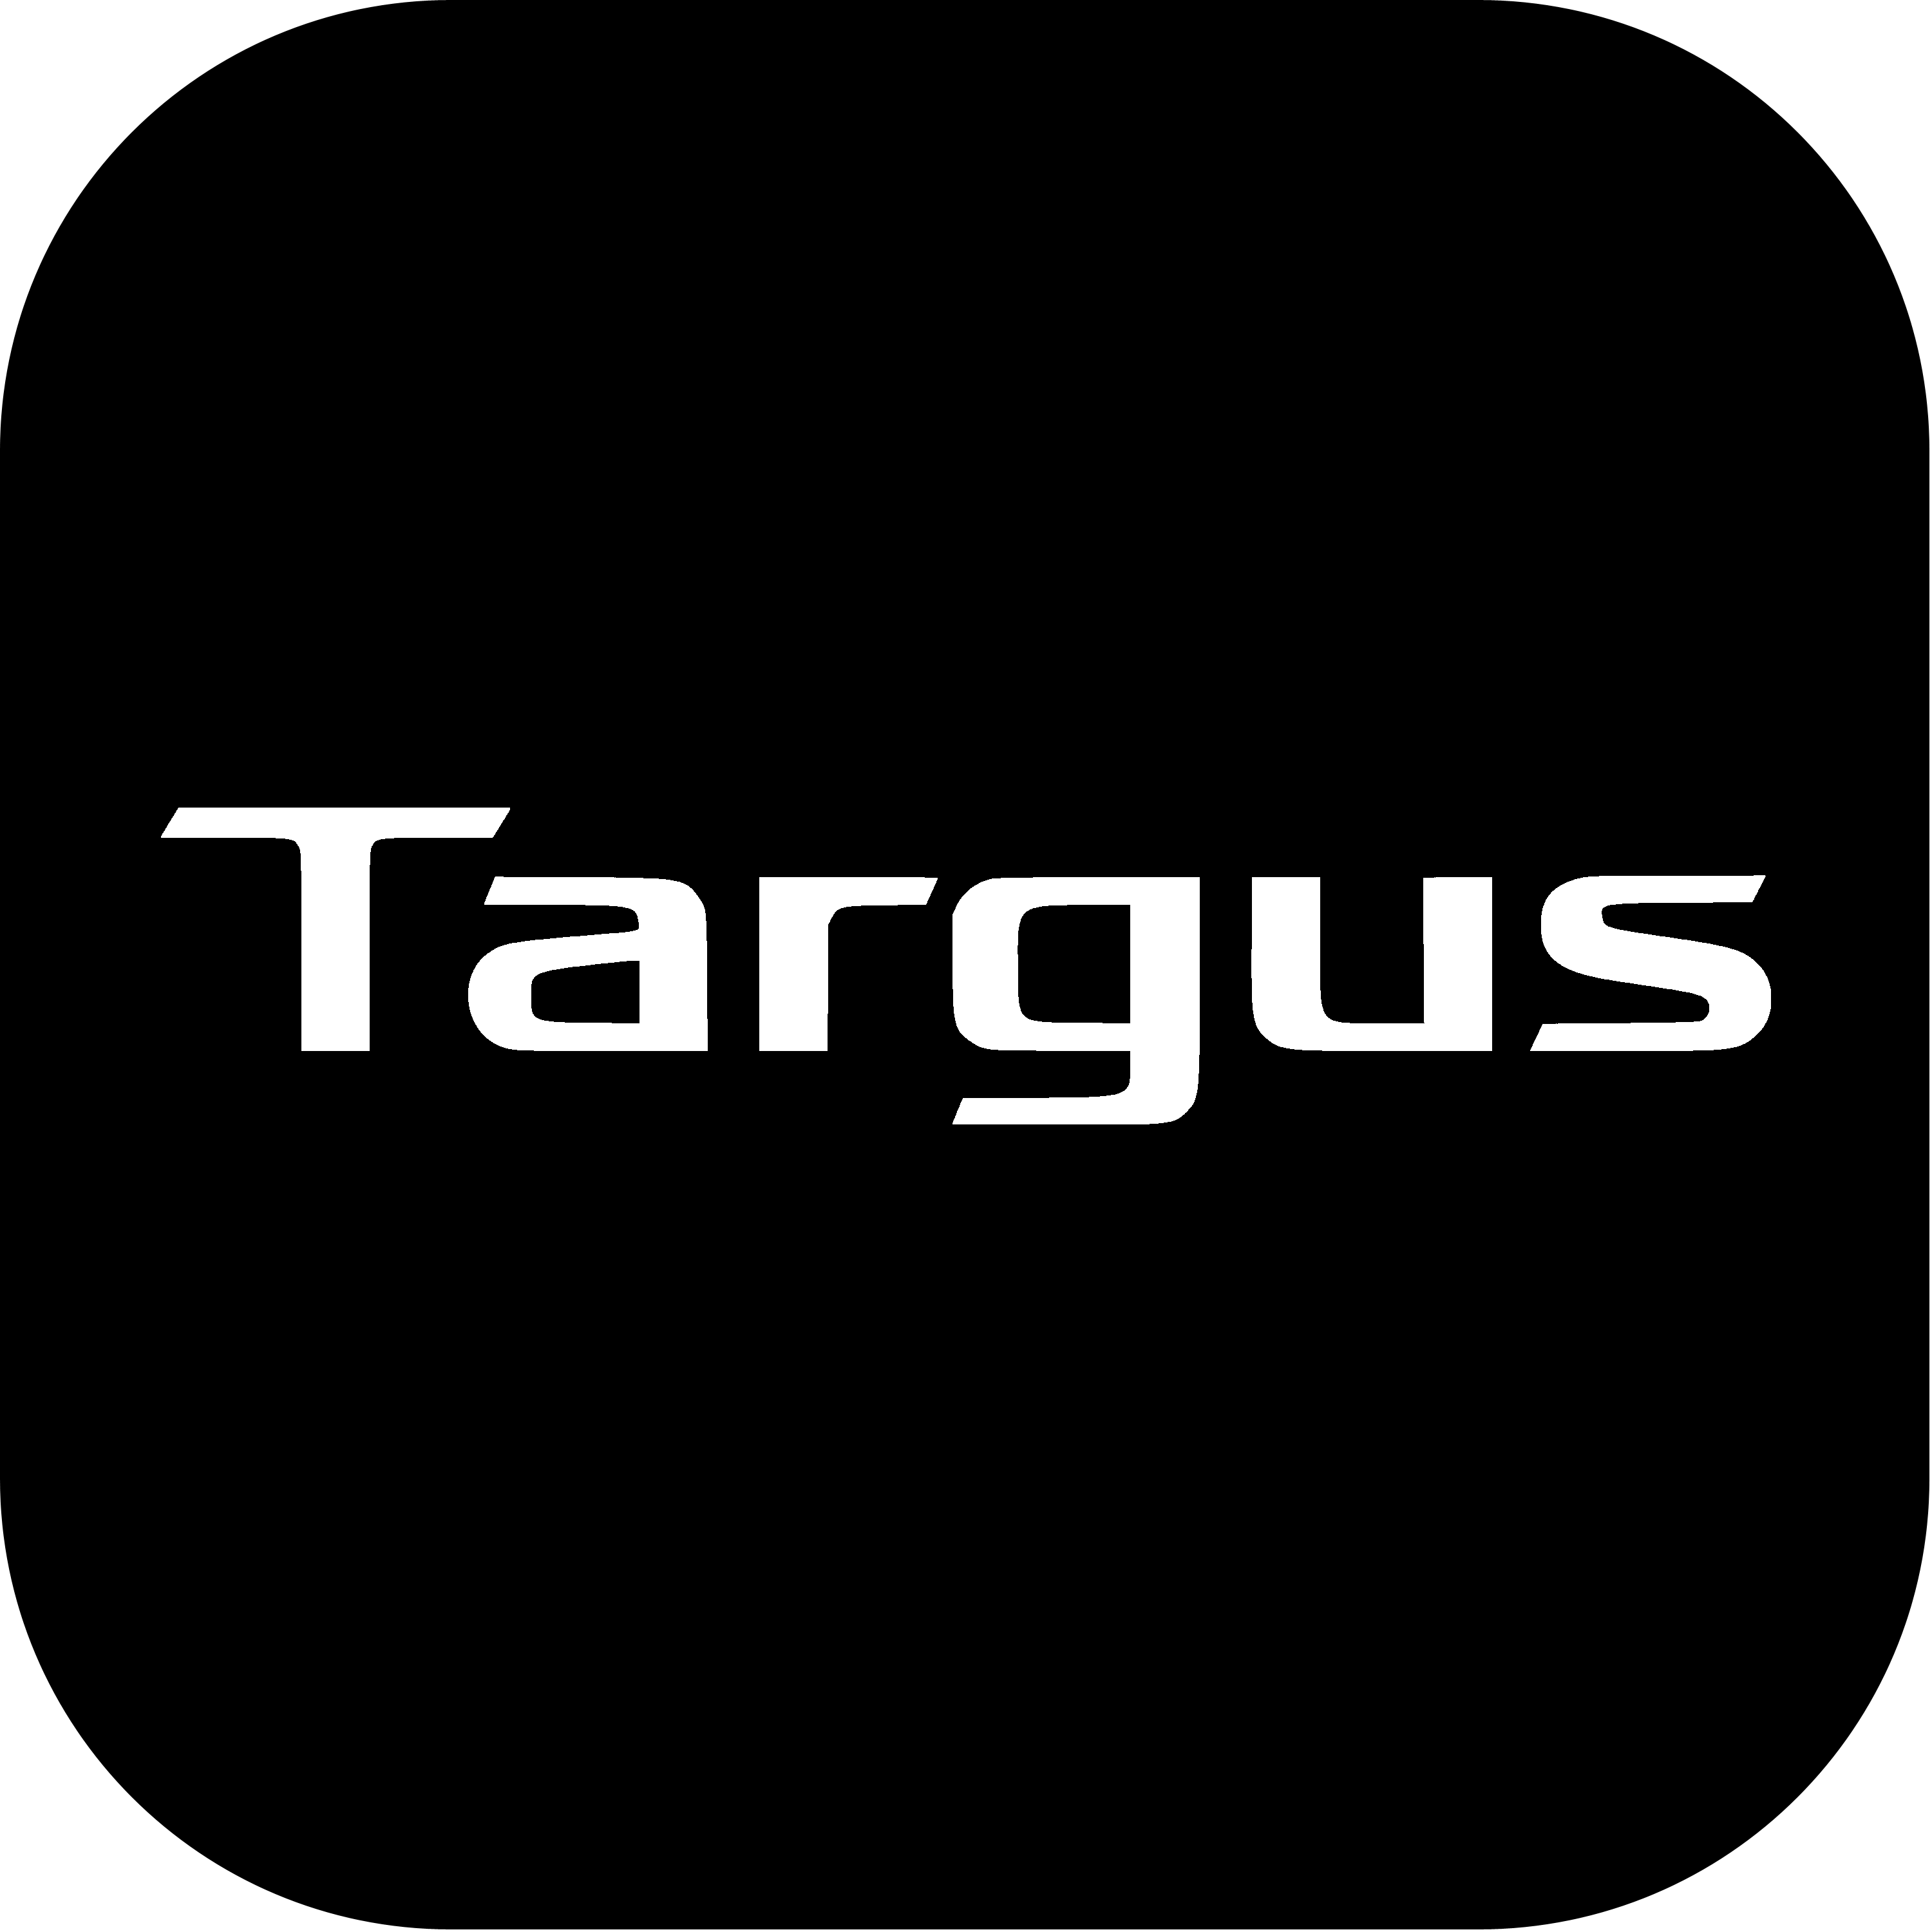 Targus Logo Transparent Picture